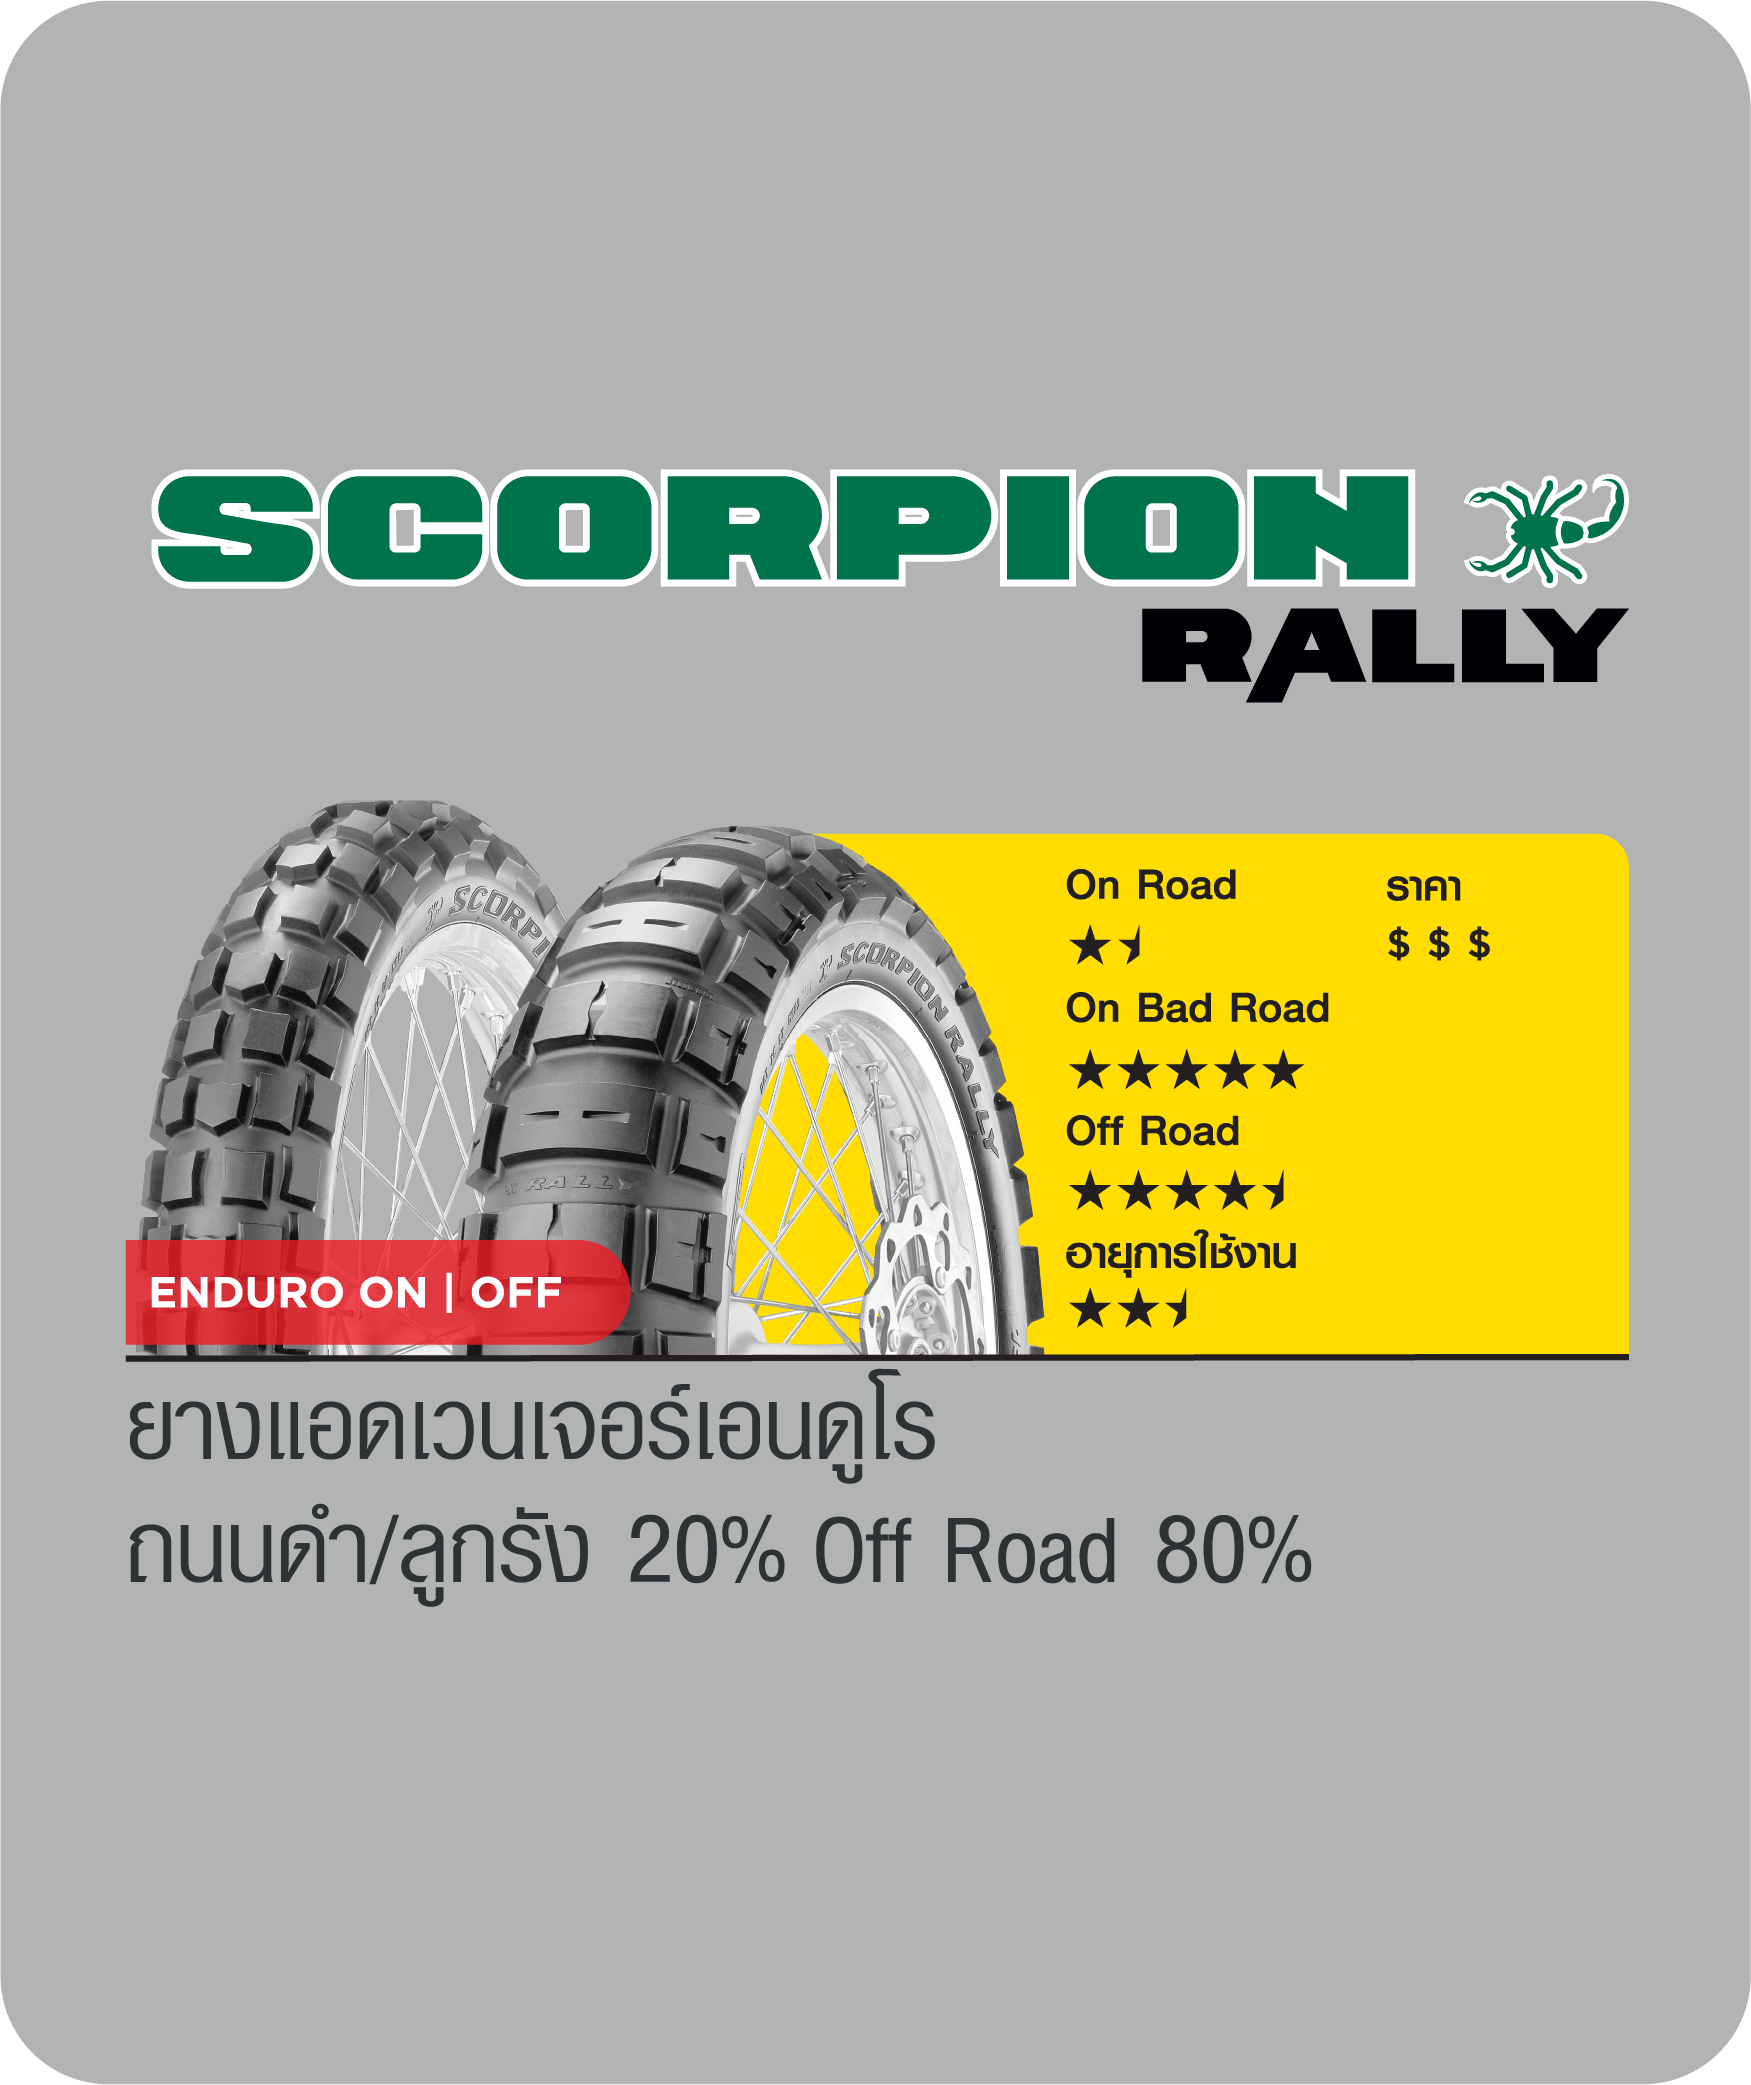 scorpion rally